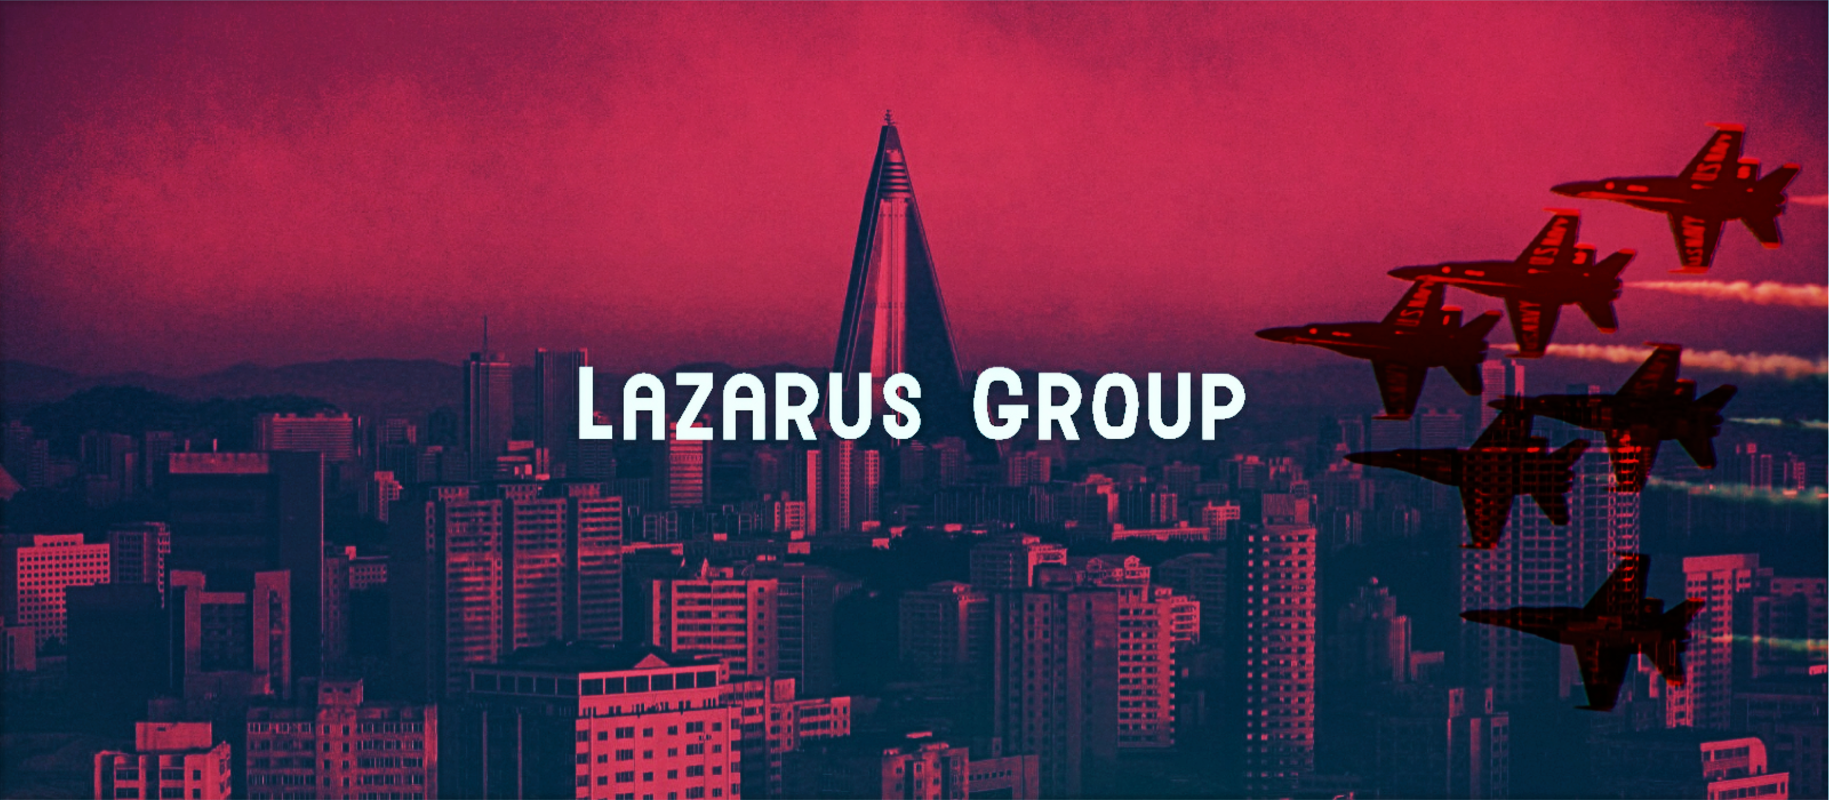 2- مجموعة لازاروس أشهر مجموعات القرصنة